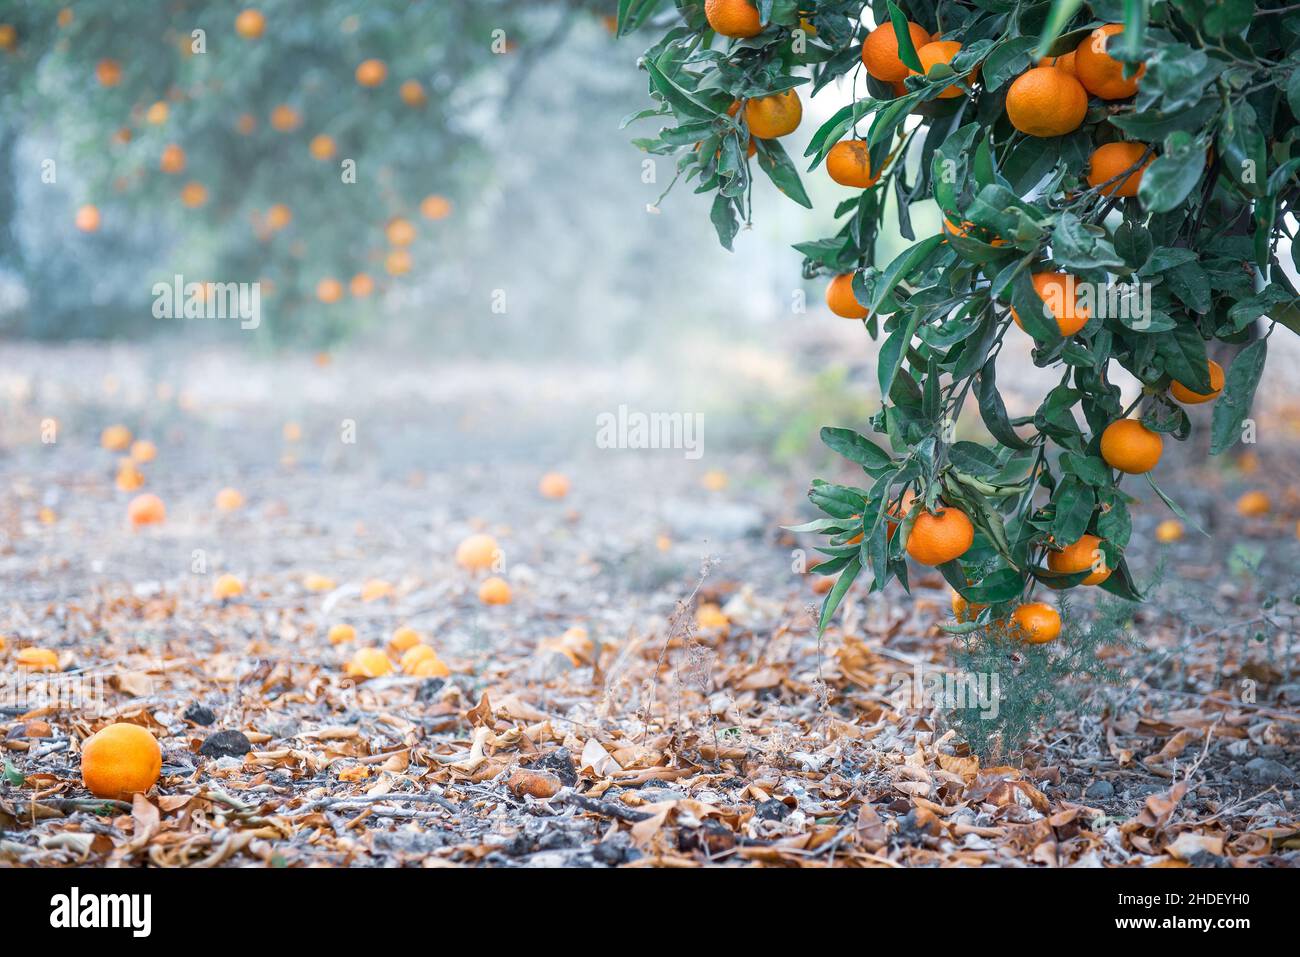 Citrus grove avec des fruits mûrs sur les branches des arbres et sur le sol, copier l'espace Banque D'Images